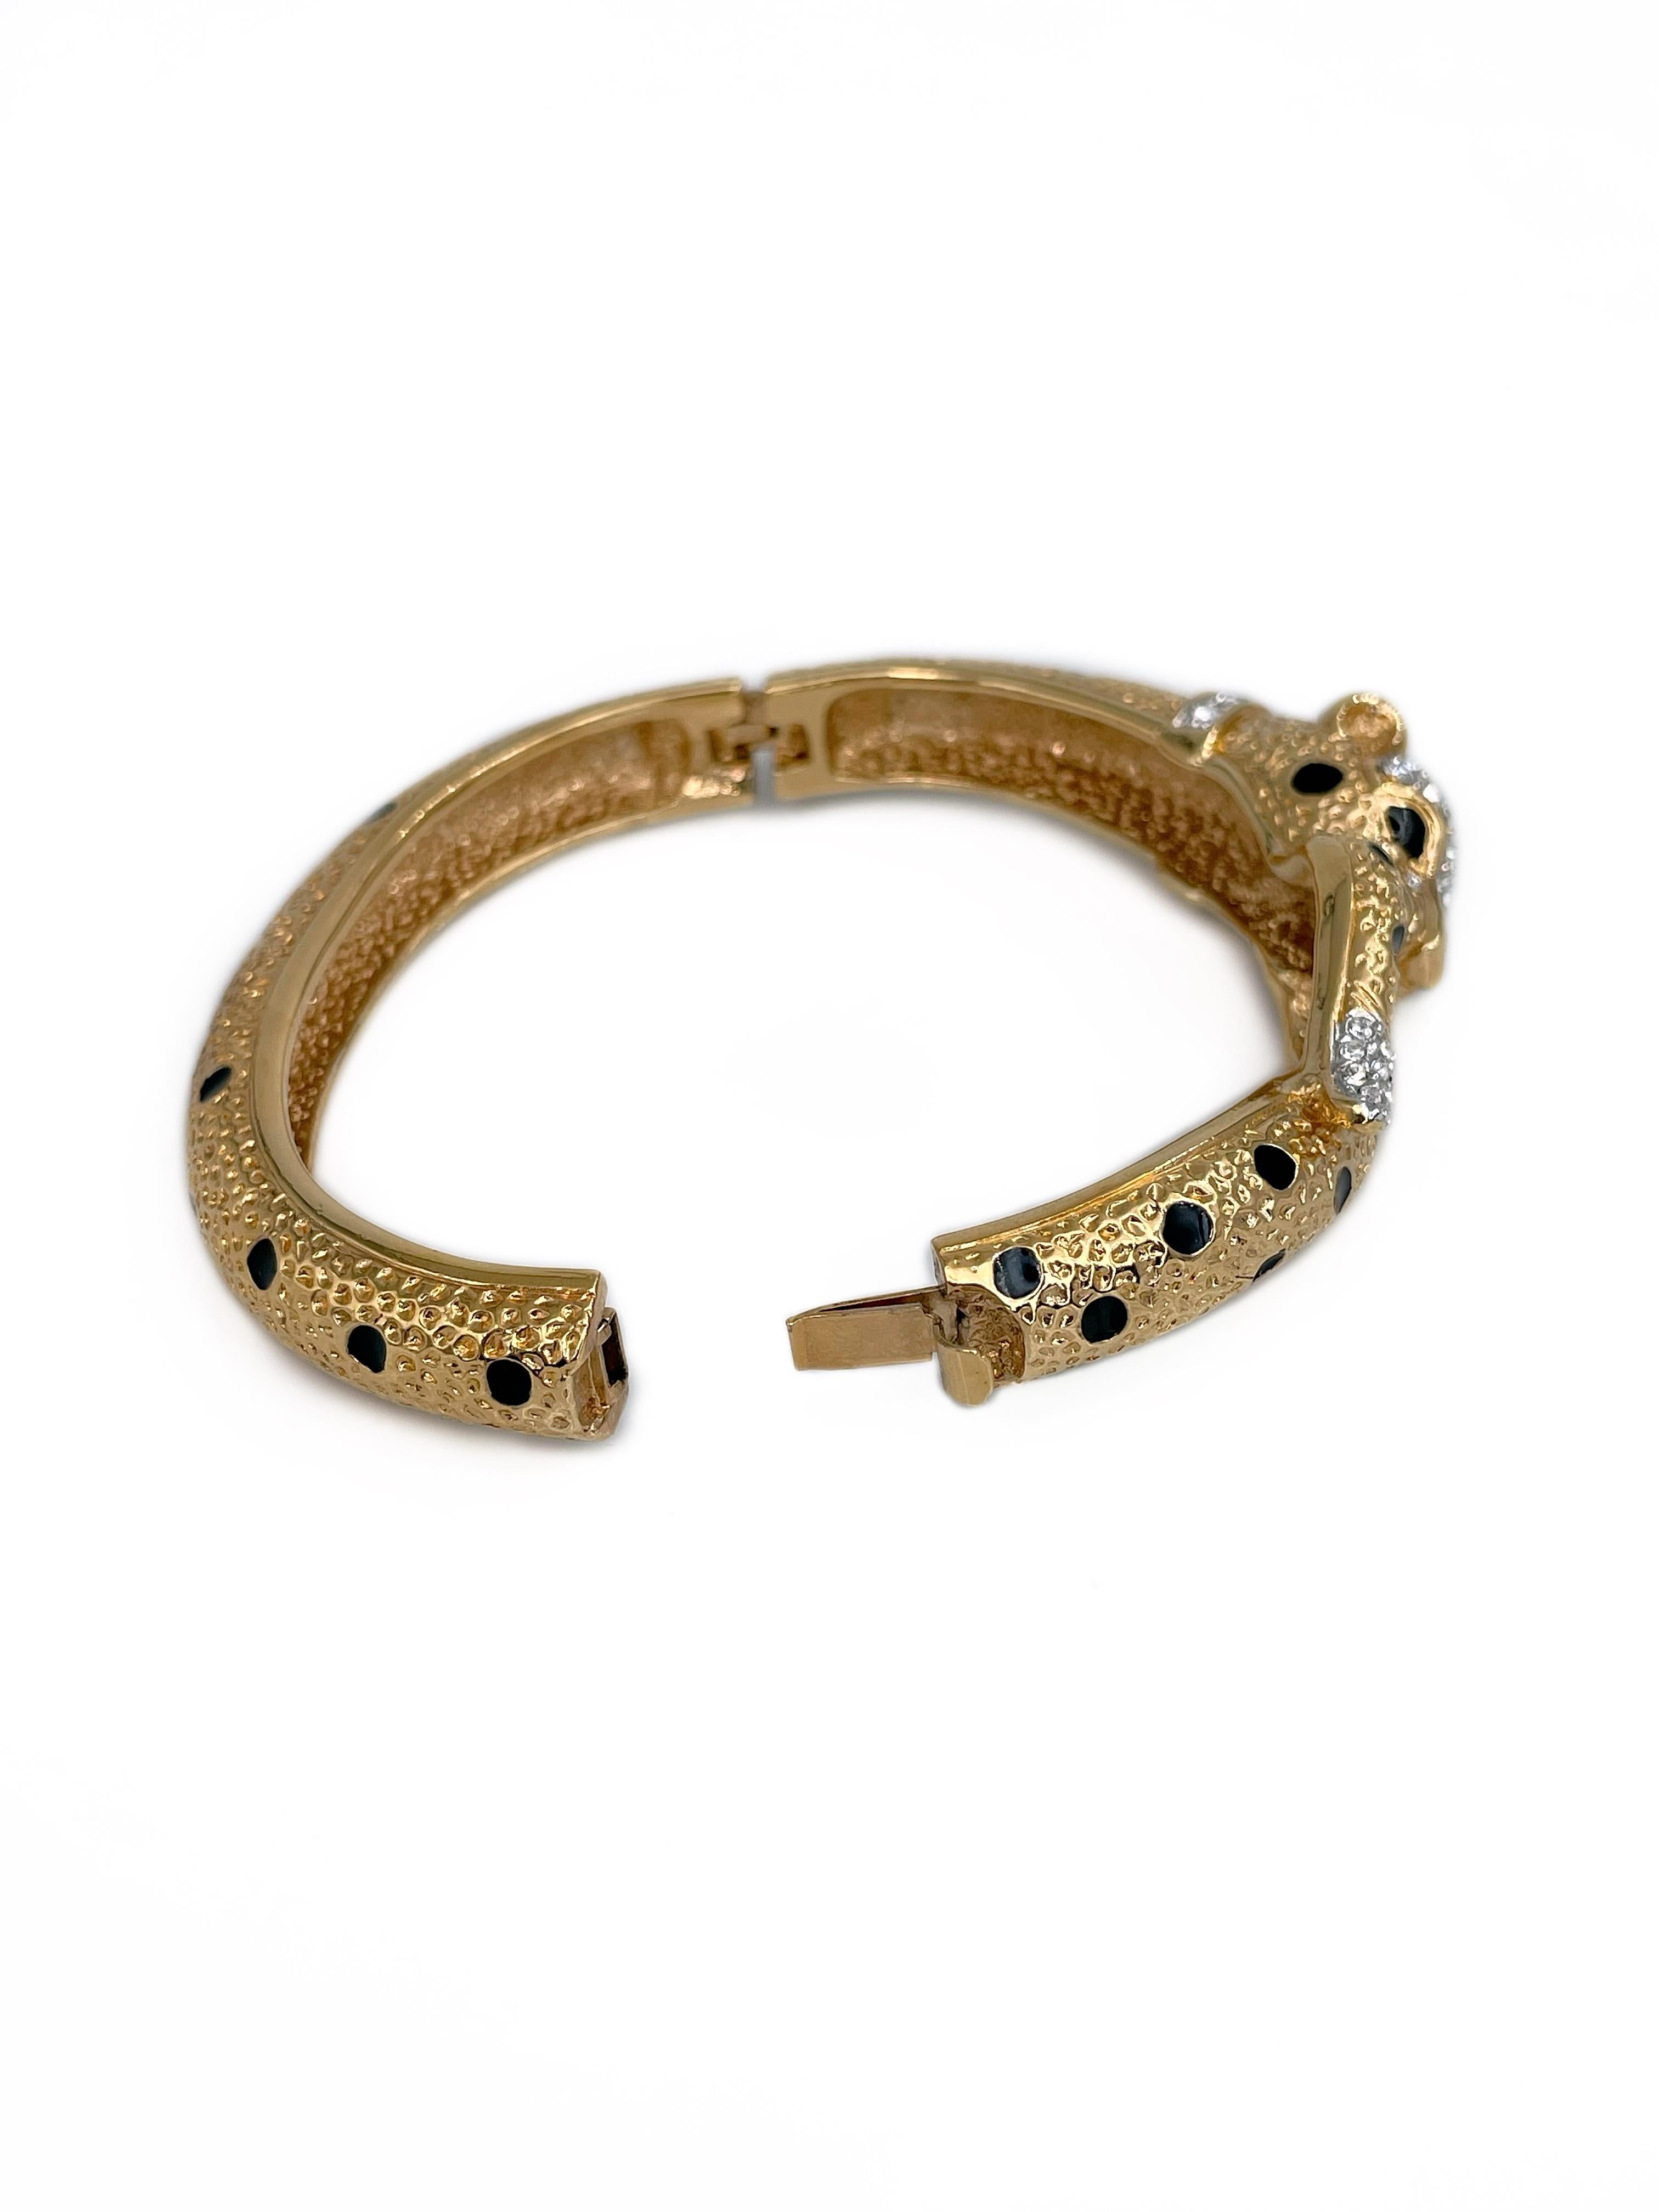 Modern 1980s Vintage Attwood & Sawyer Gold Tone Enamel Crystal Leopard Bangle Bracelet